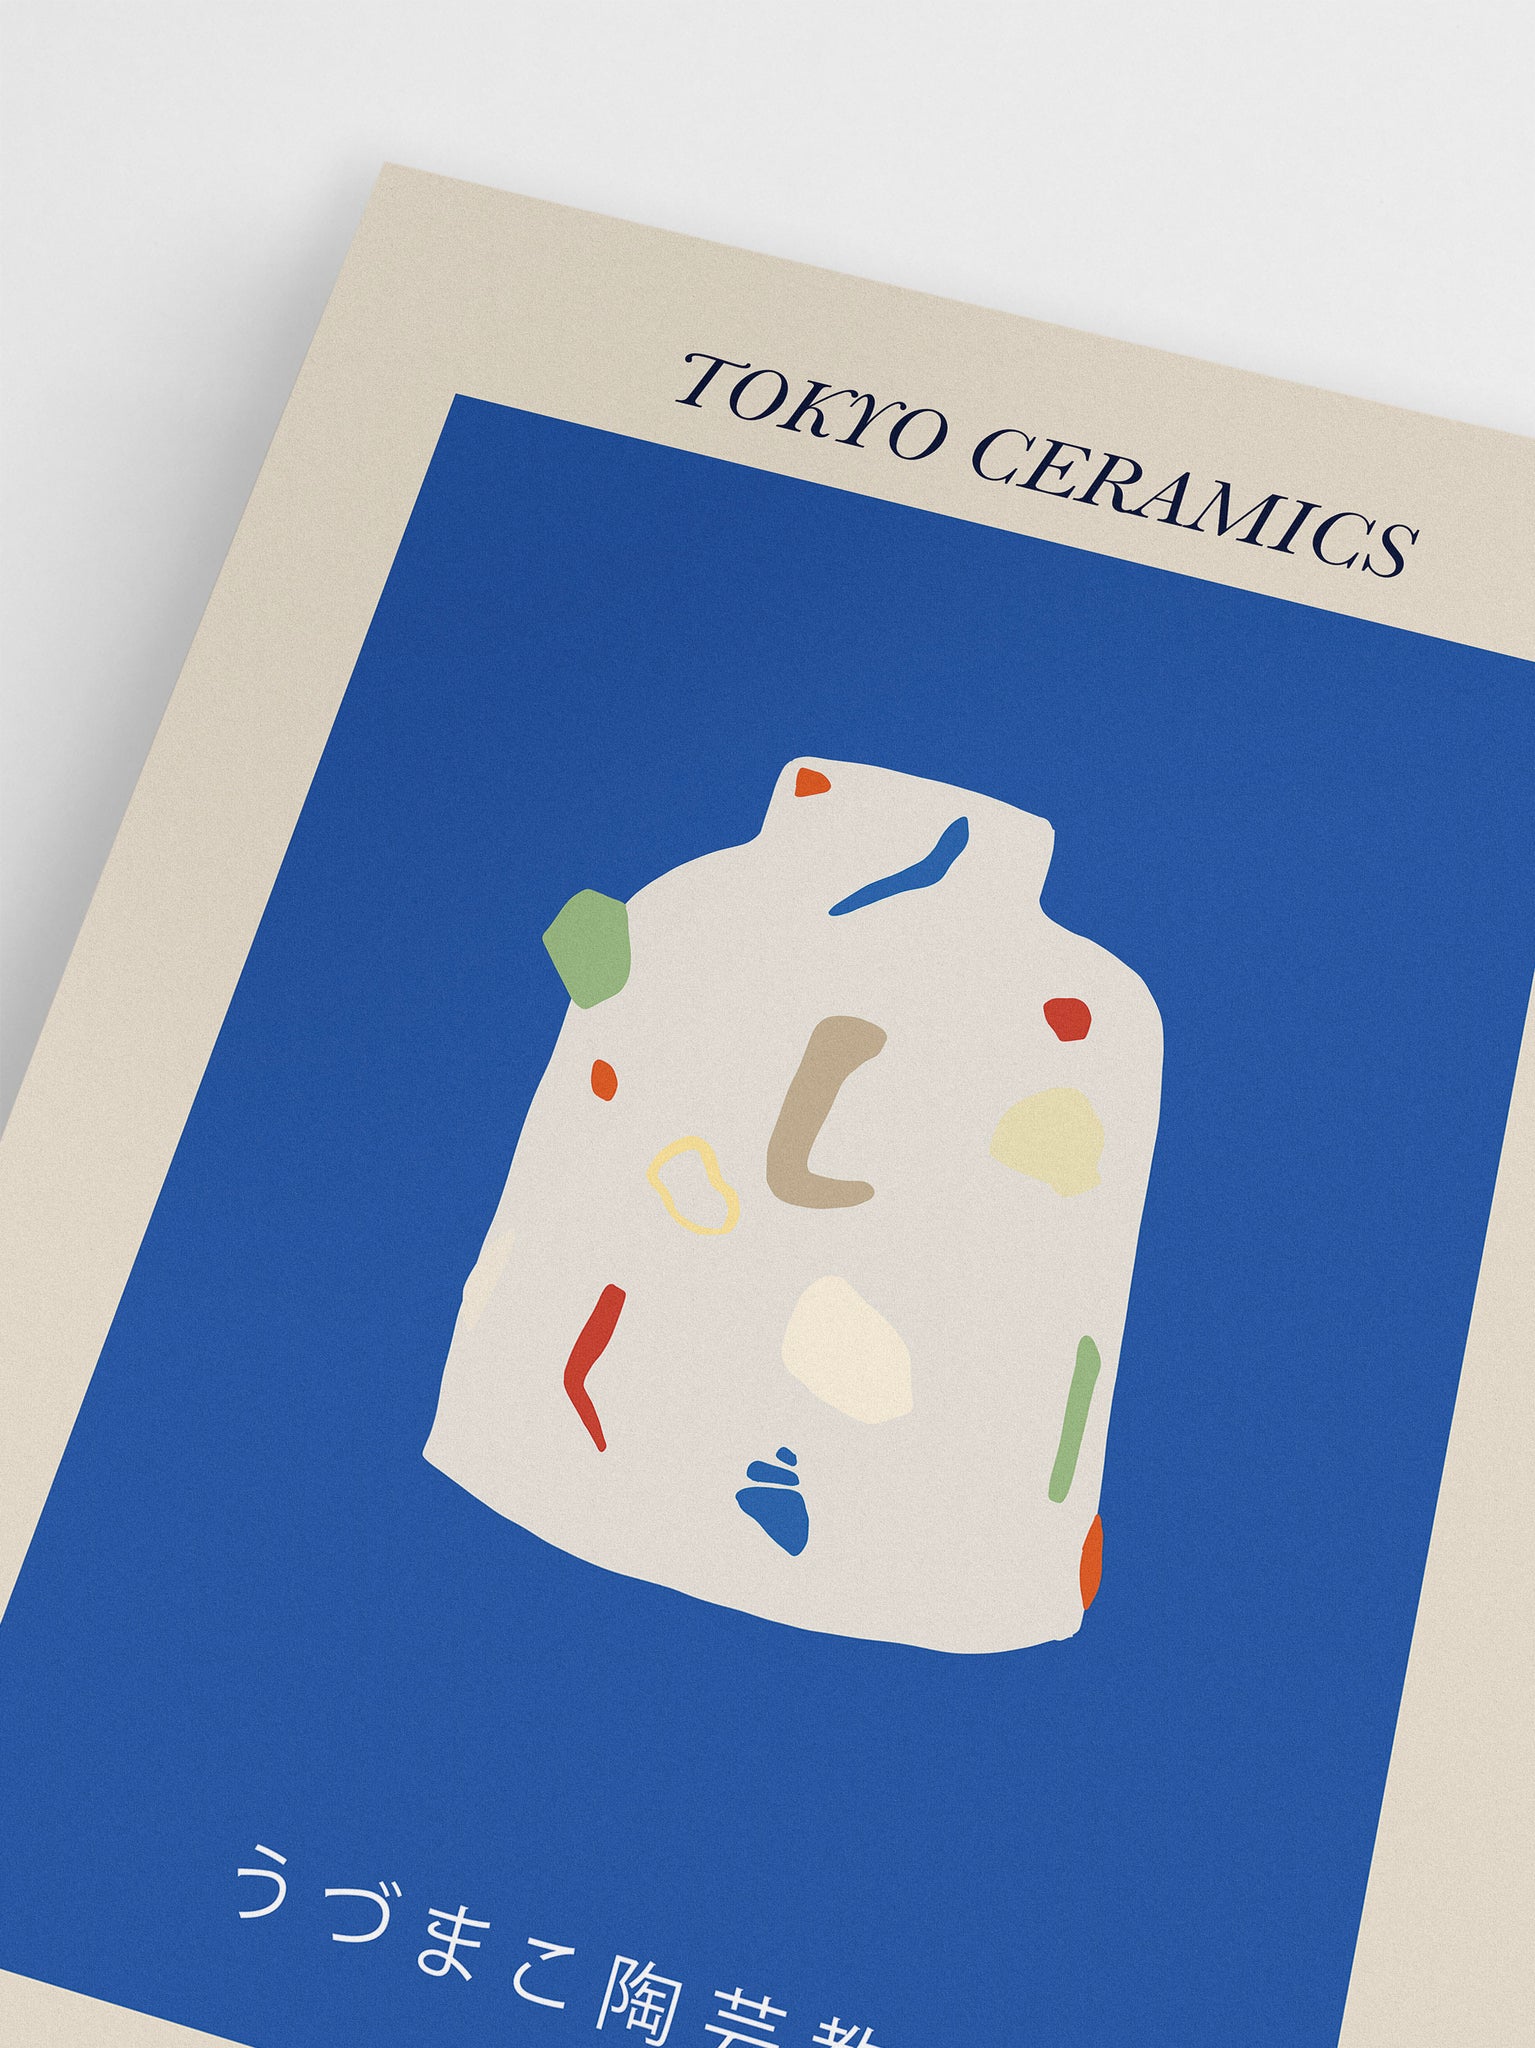 Tokyo Ceramics Poster